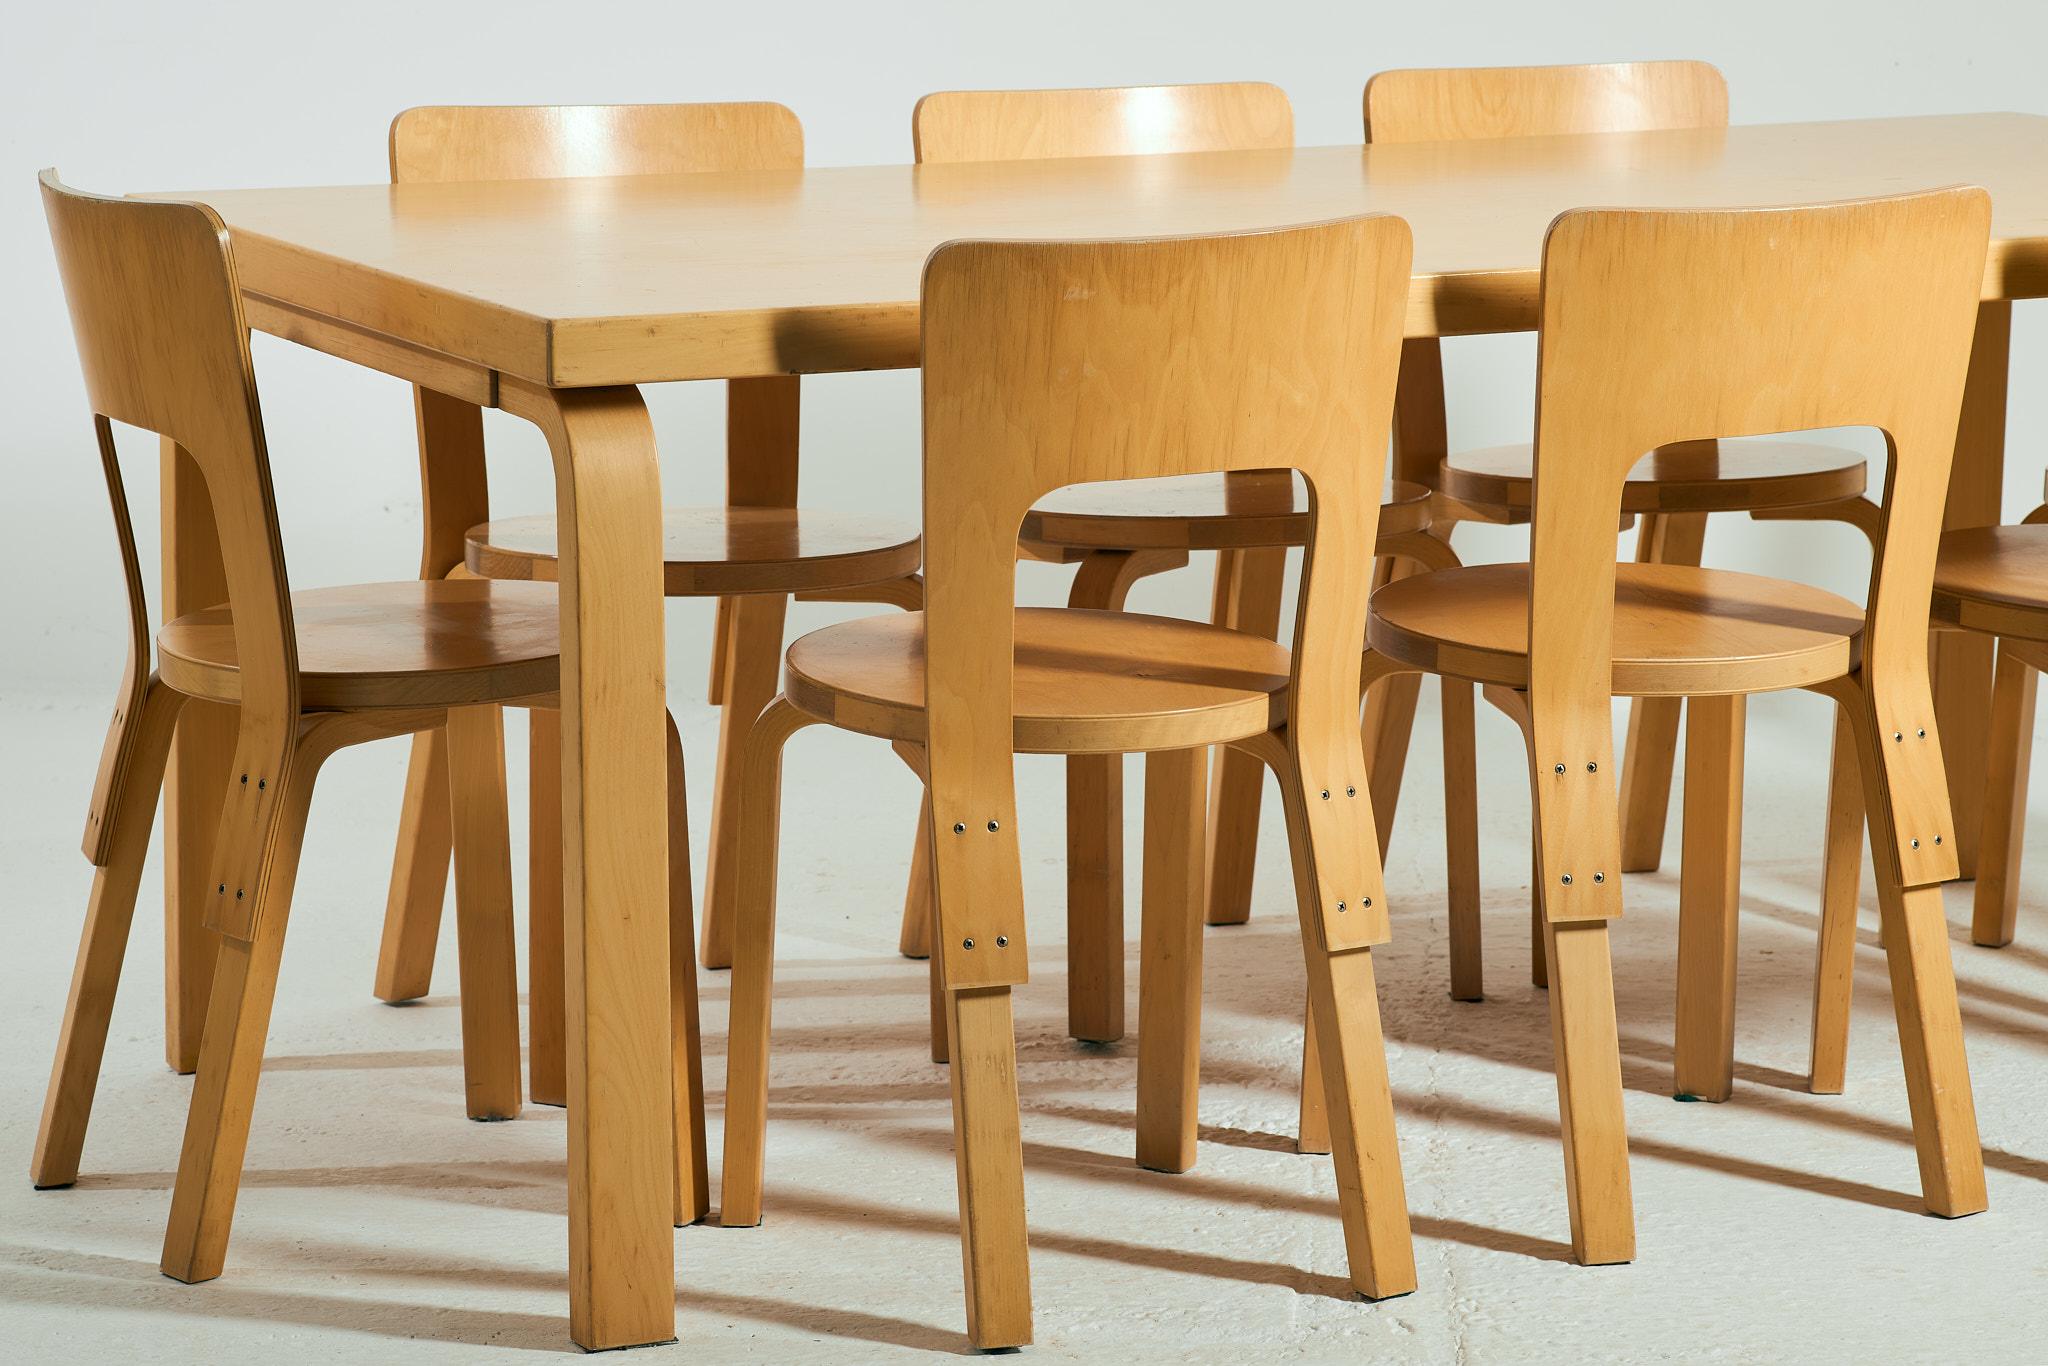 Une table de salle à manger vintage modèle 83 par Alvar Aalto pour Artek en contreplaqué de bouleau finlandais et 8 chaises modèle 66 dans le même bois. 

Cette série a plus de 20 ans, mais la date de production exacte n'est pas claire. Il n'y a pas